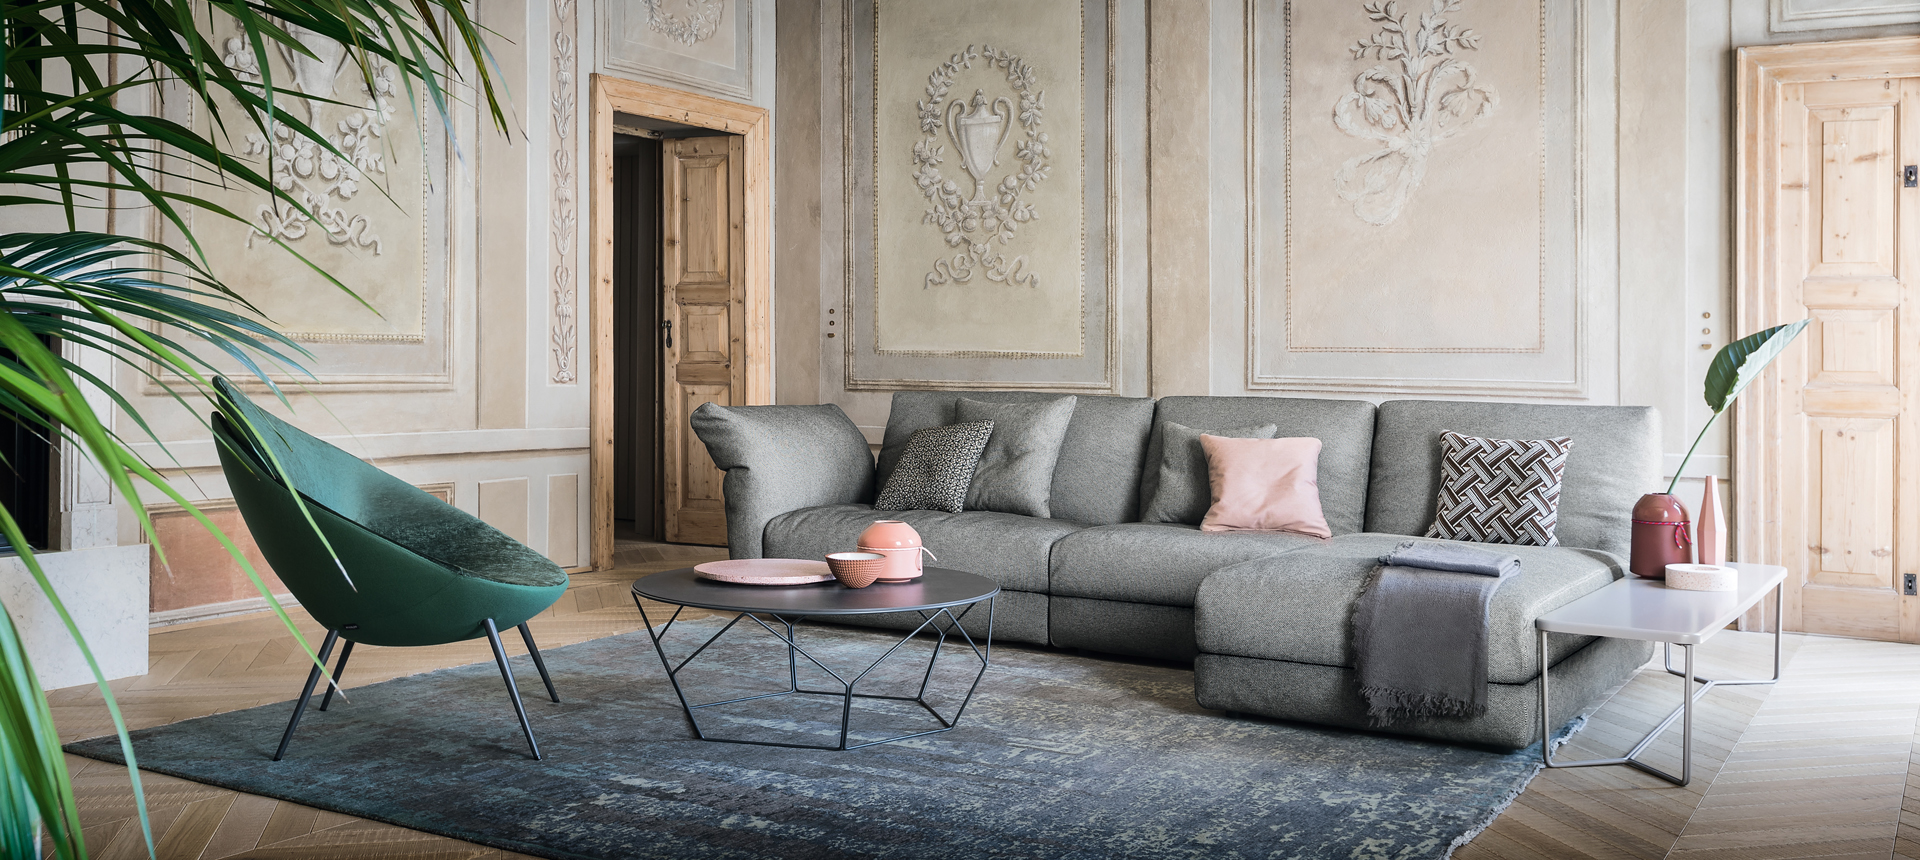 designer living room furniture on sale